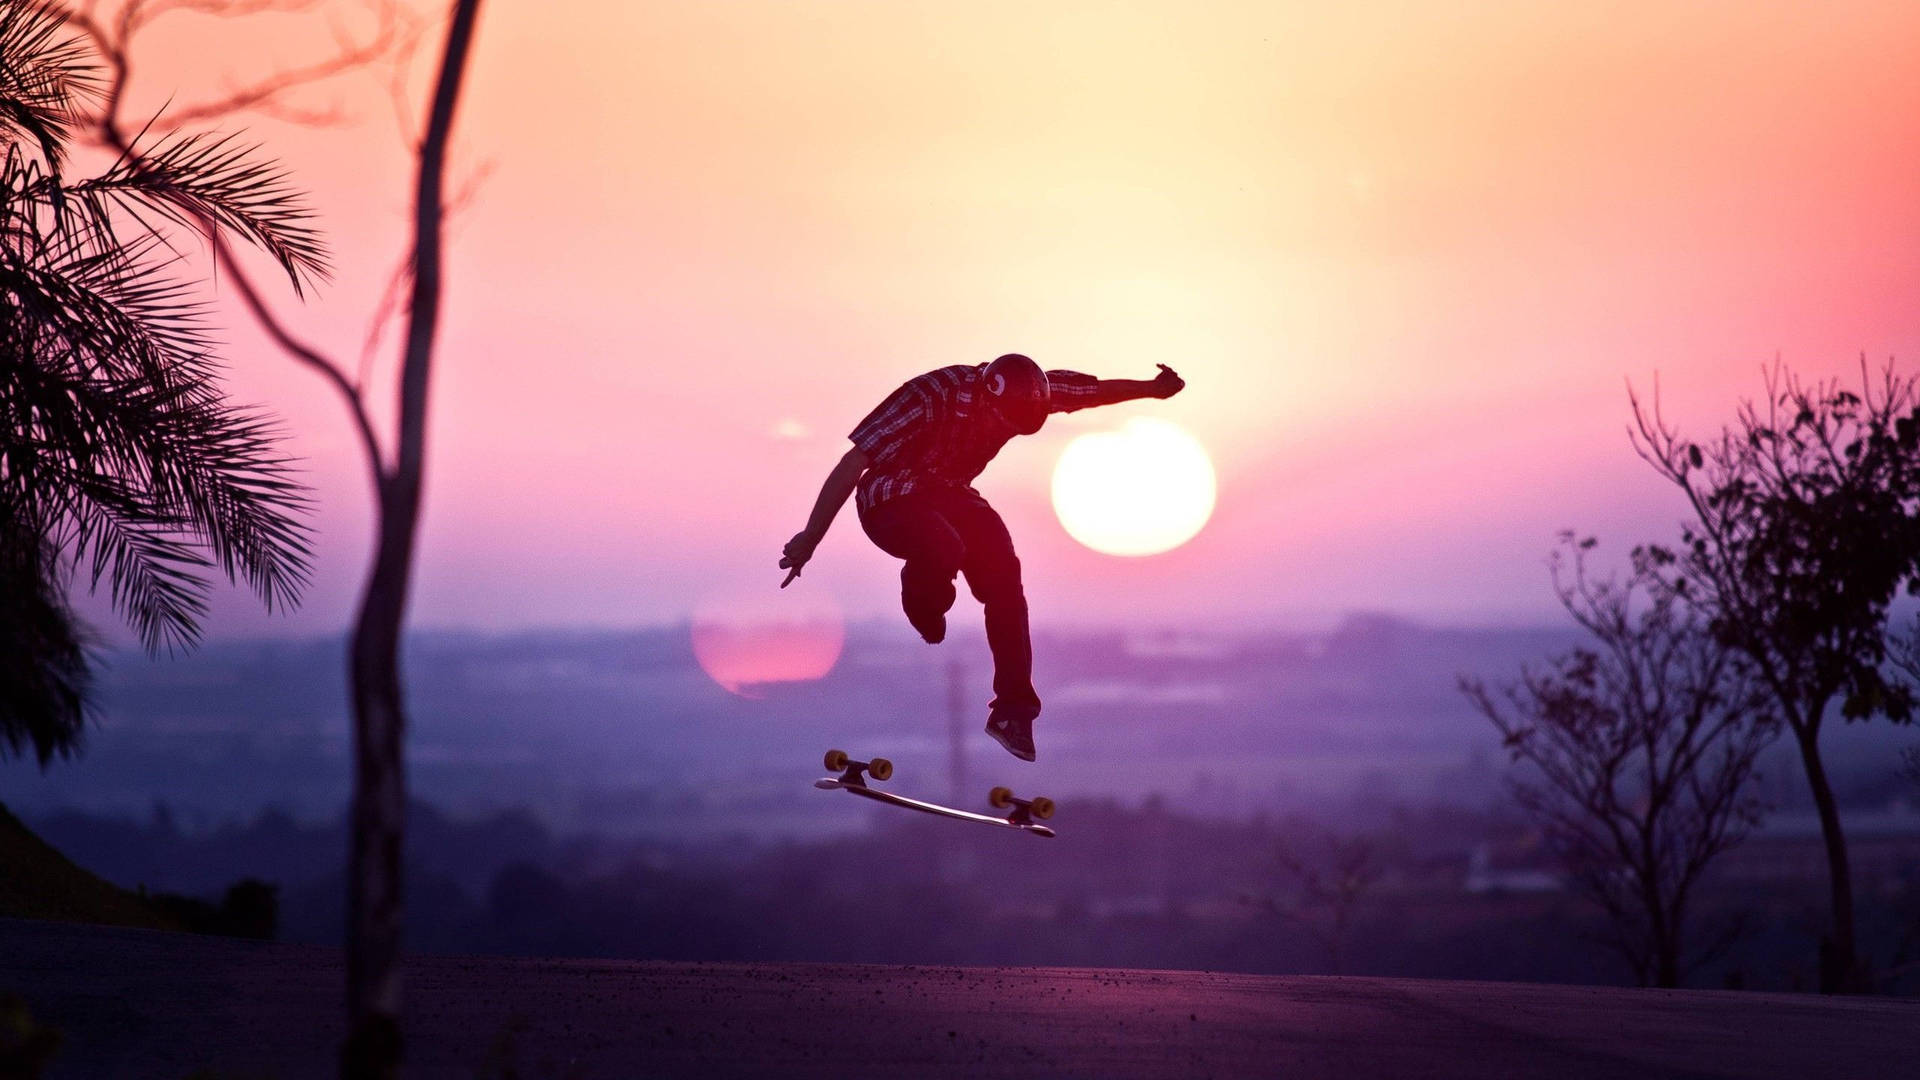 Skateboard In The Sunset Wallpaper